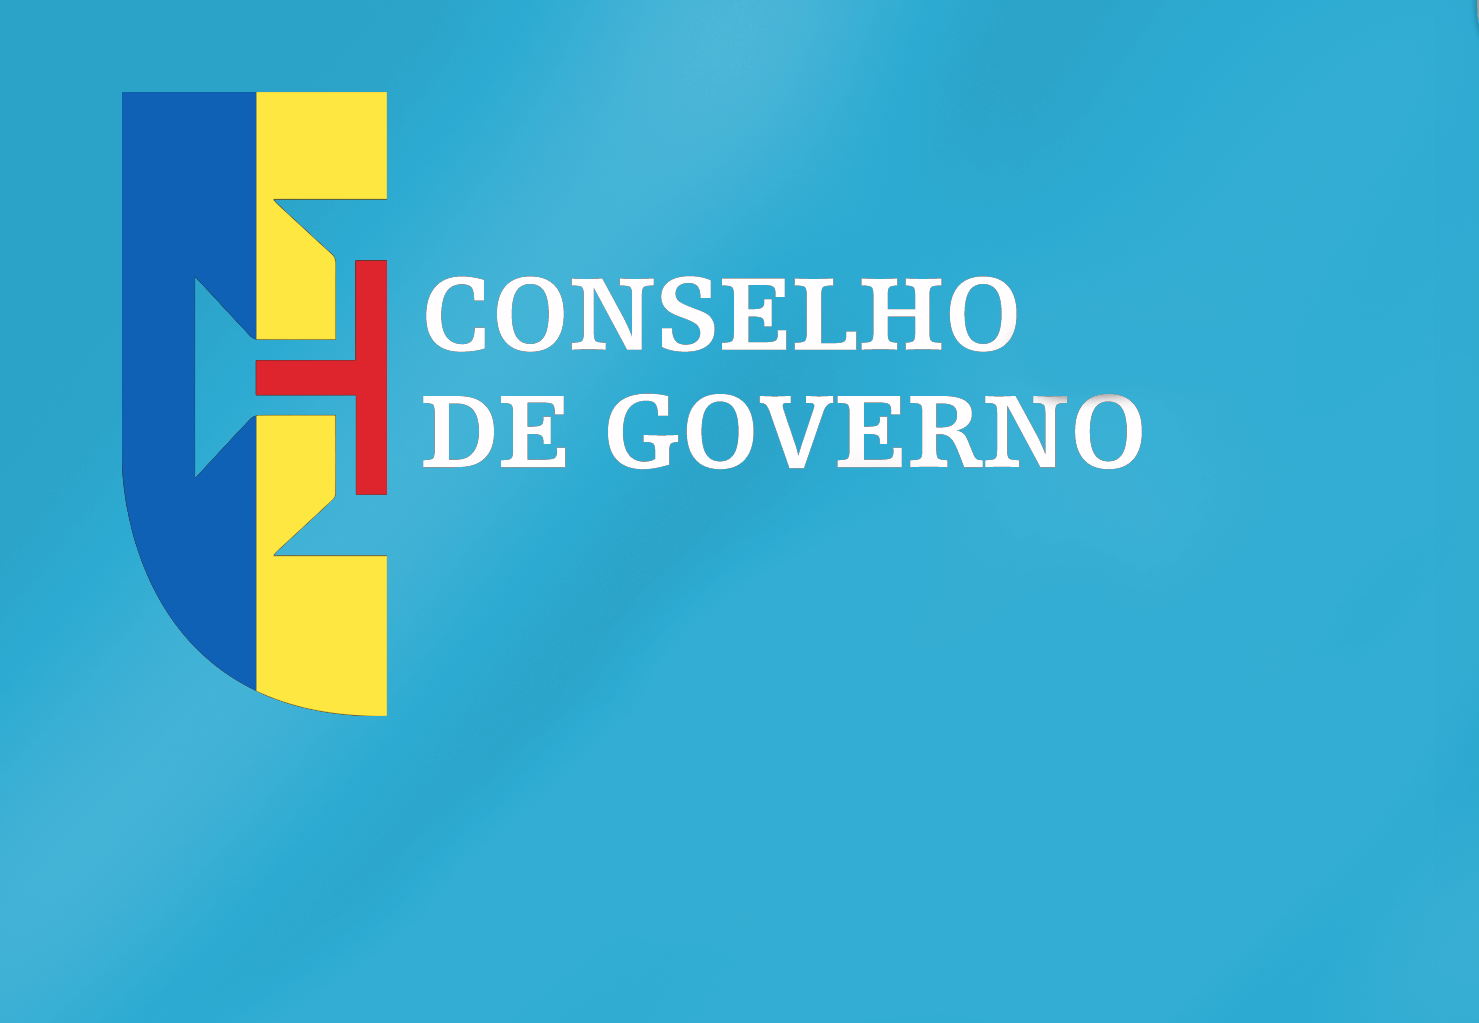 Conclusões Conselho de Governo - 21 de julho de 2022